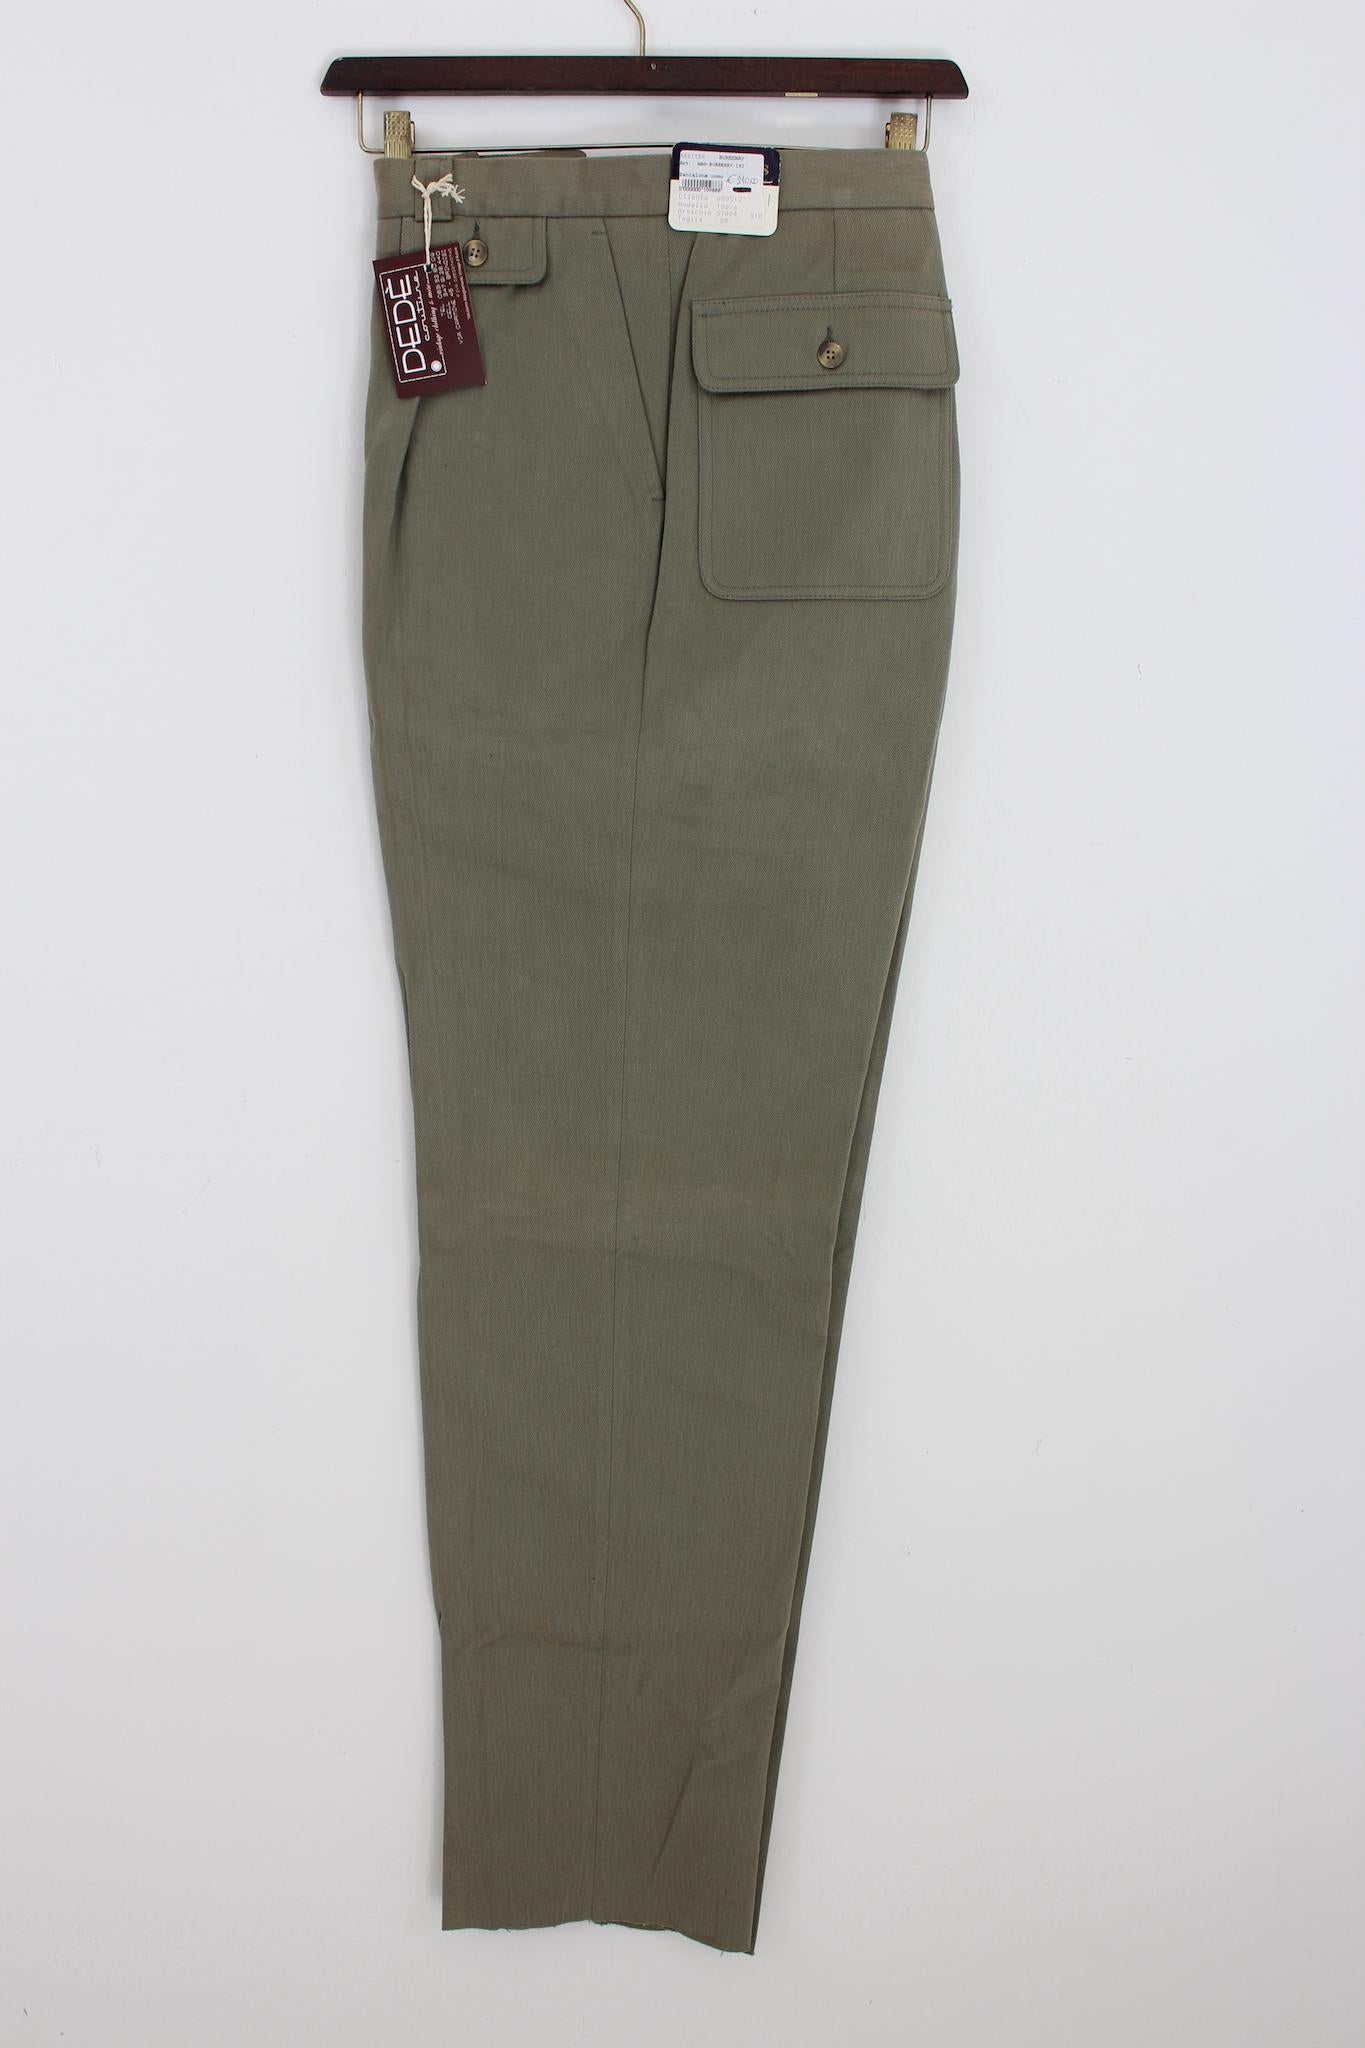 Pantalon classique vintage des années 90 de Burberry. Modèle à jambe droite, couleur vert clair, tissu 100% coton. Fabriquées en Italie. Nouveau avec étiquette, provenant du stock de l'entrepôt.

Taille : 58 It 48 Us 48 Uk

Taille : 50 cm
Longueur :